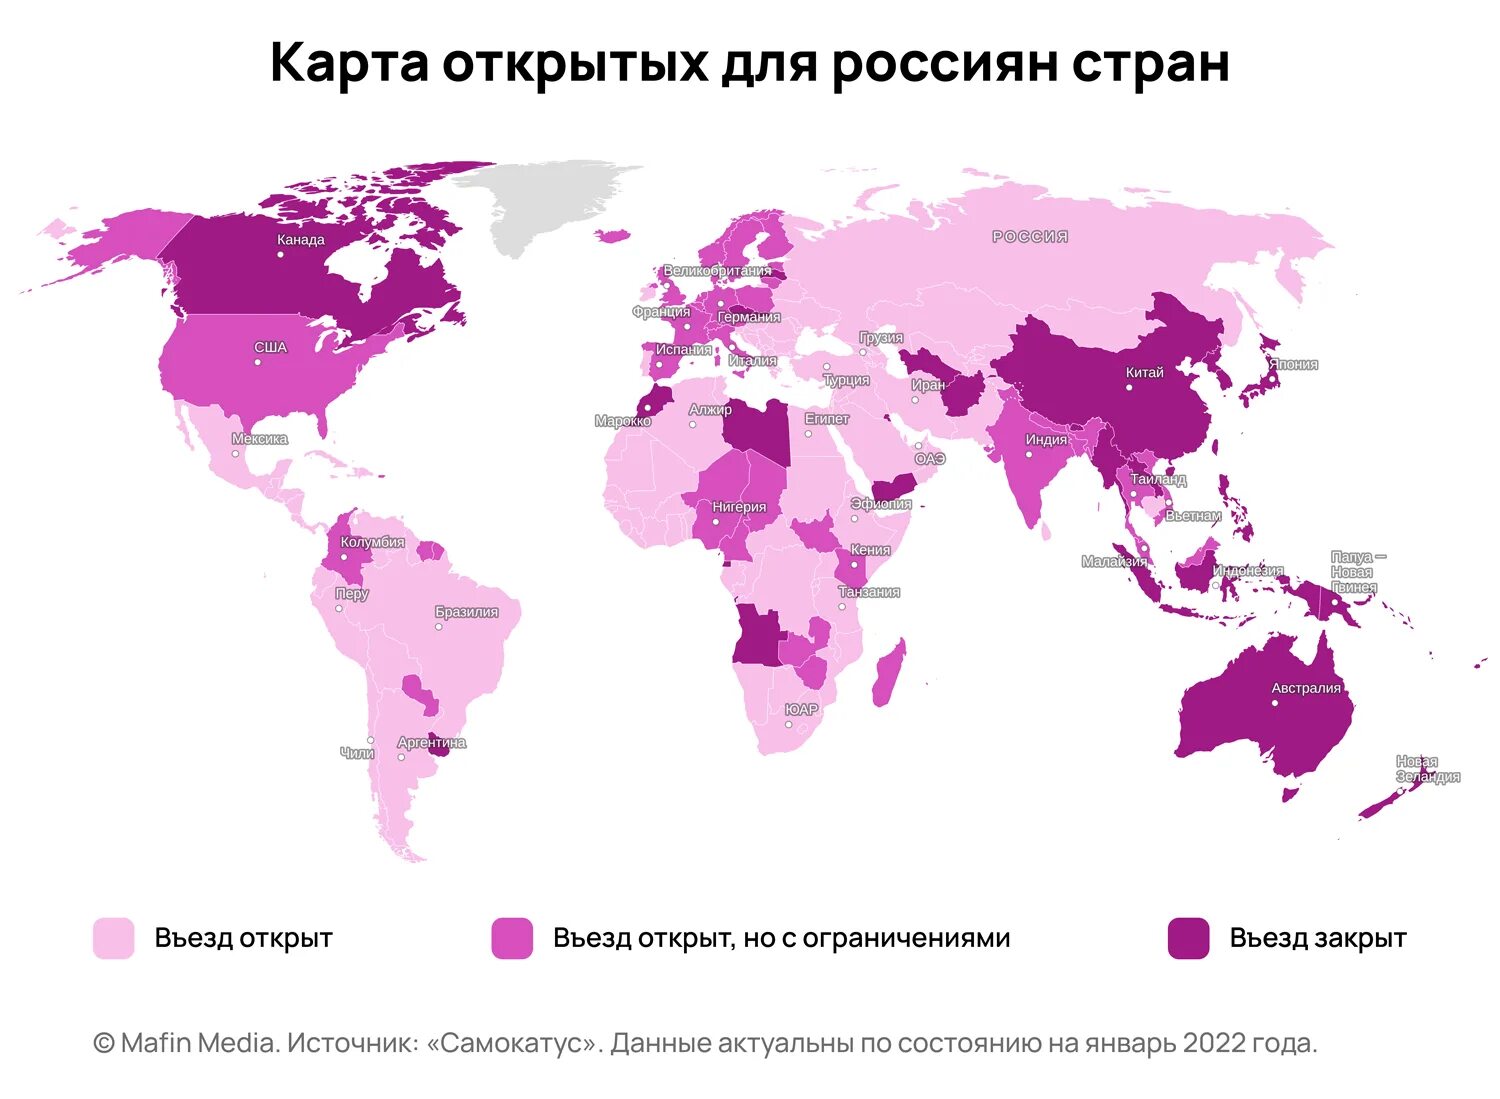 Новые открытые страны. Карта открытых стран для россиян 2022. Открытые страны для россиян 2022. Какие страны открыты для россиян в 2022. Какие страны сейчас открыты для россиян 2022.